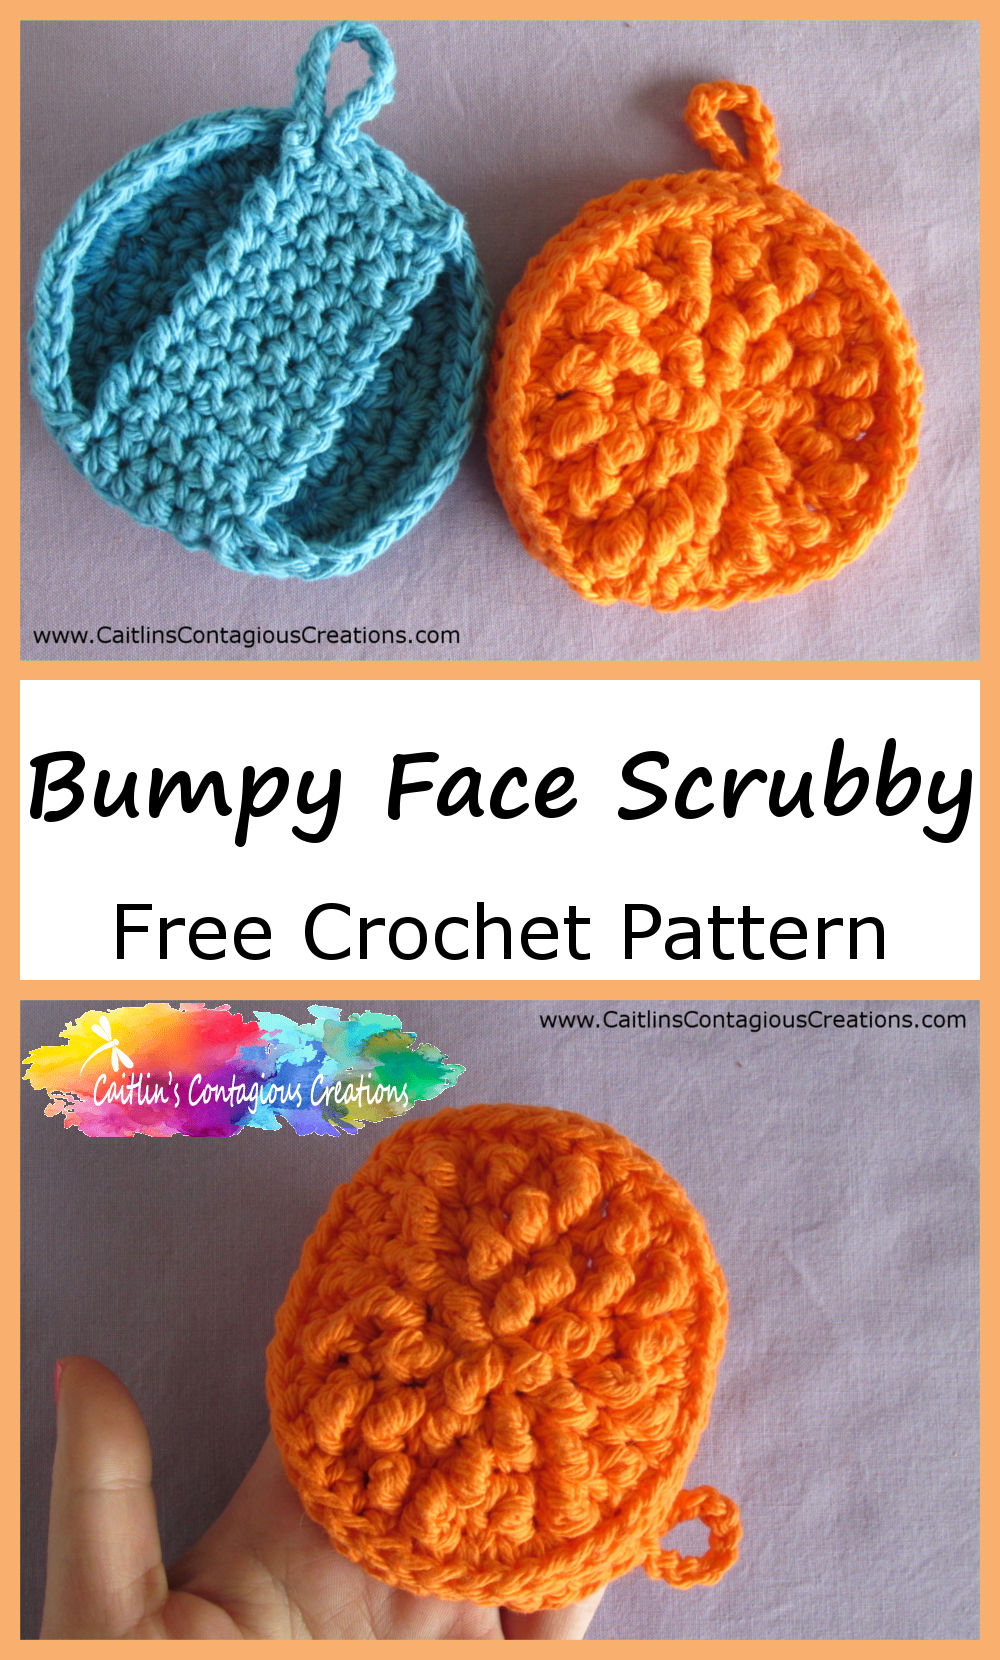 Bumpy Face Scrubby Free Crochet Pattern